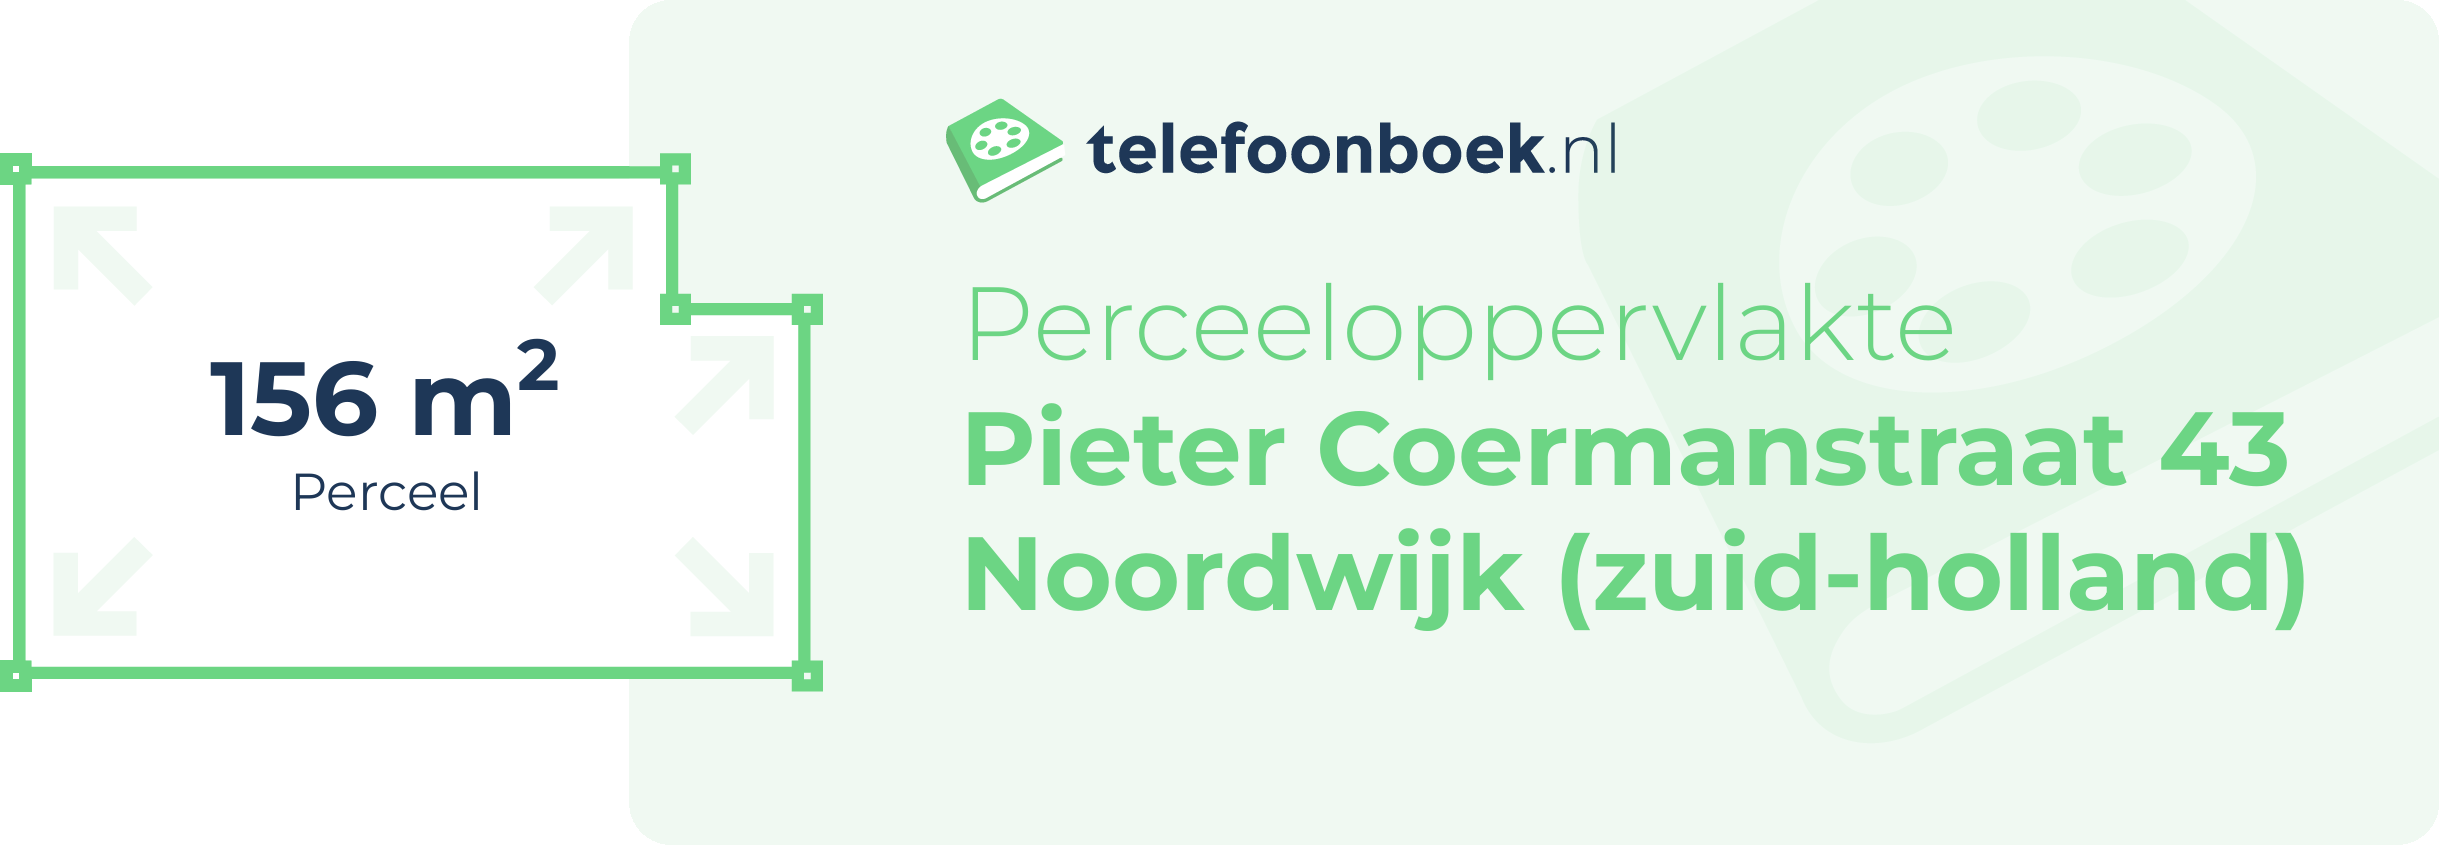 Perceeloppervlakte Pieter Coermanstraat 43 Noordwijk (Zuid-Holland)